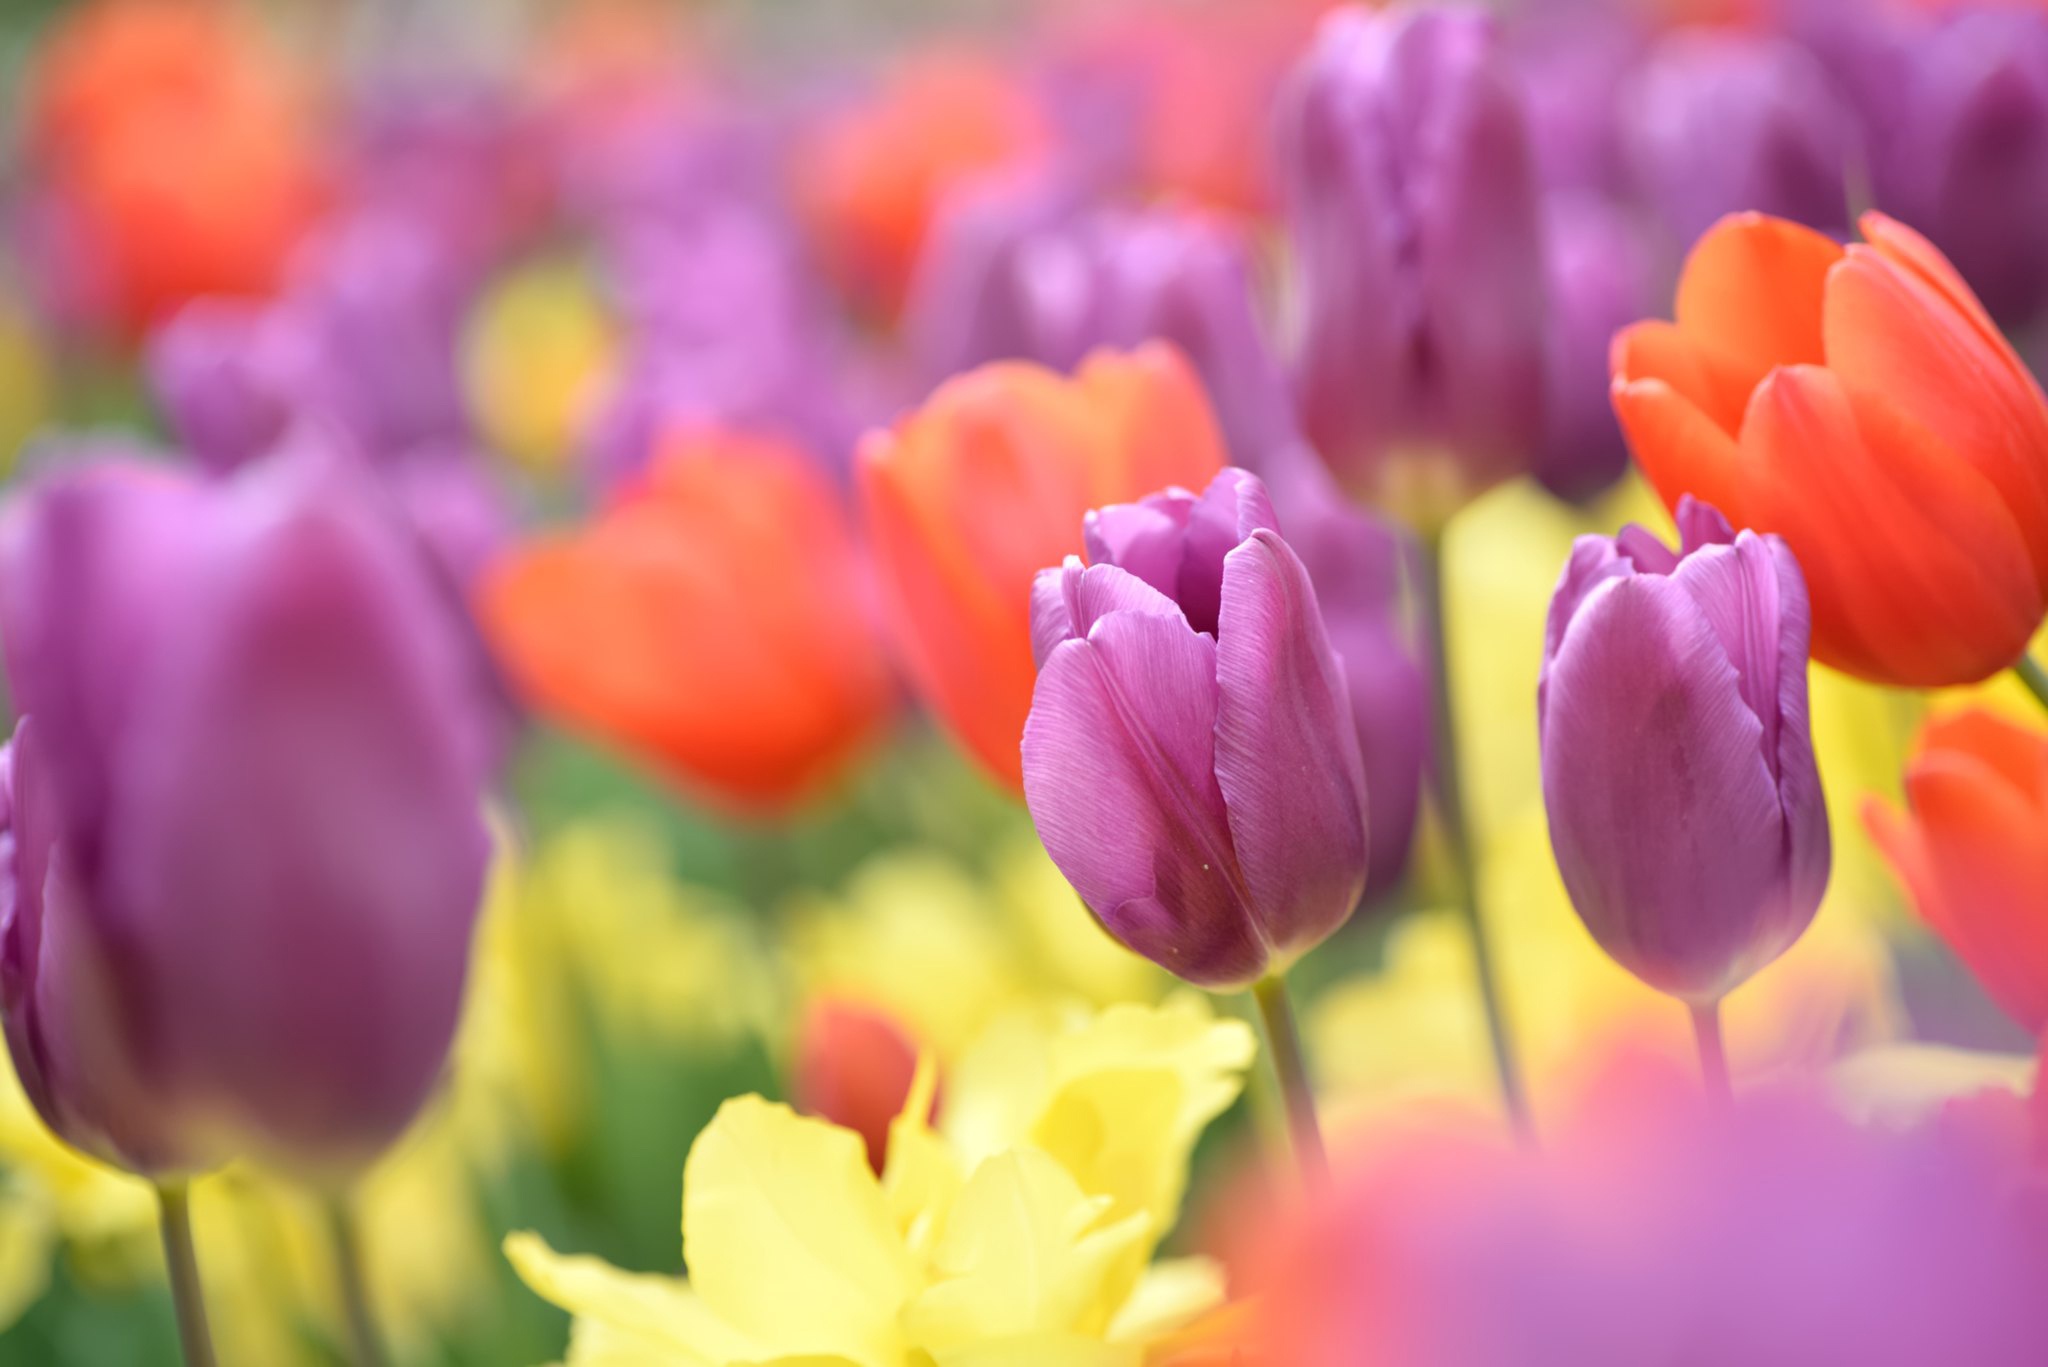 Descarga gratuita de fondo de pantalla para móvil de Naturaleza, Flores, Flor, Tulipán, Flor Purpura, Tierra/naturaleza, Macrofotografía, Flor Naranja.